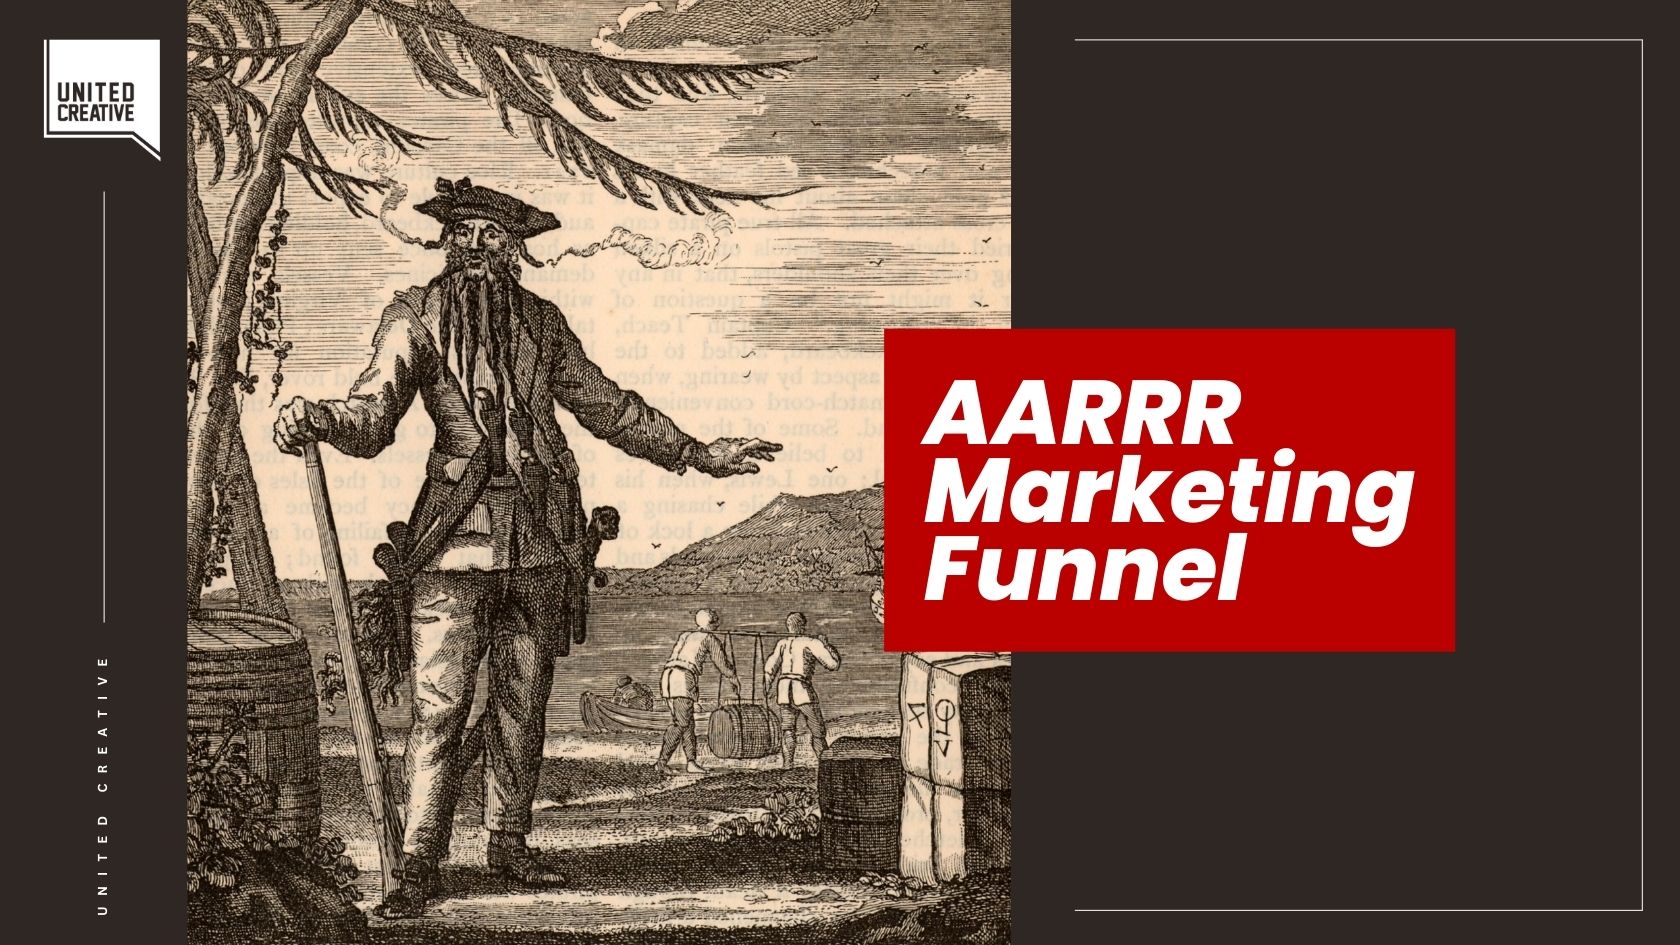 Memahami Marketing Funnel Pirate atau AARRR image